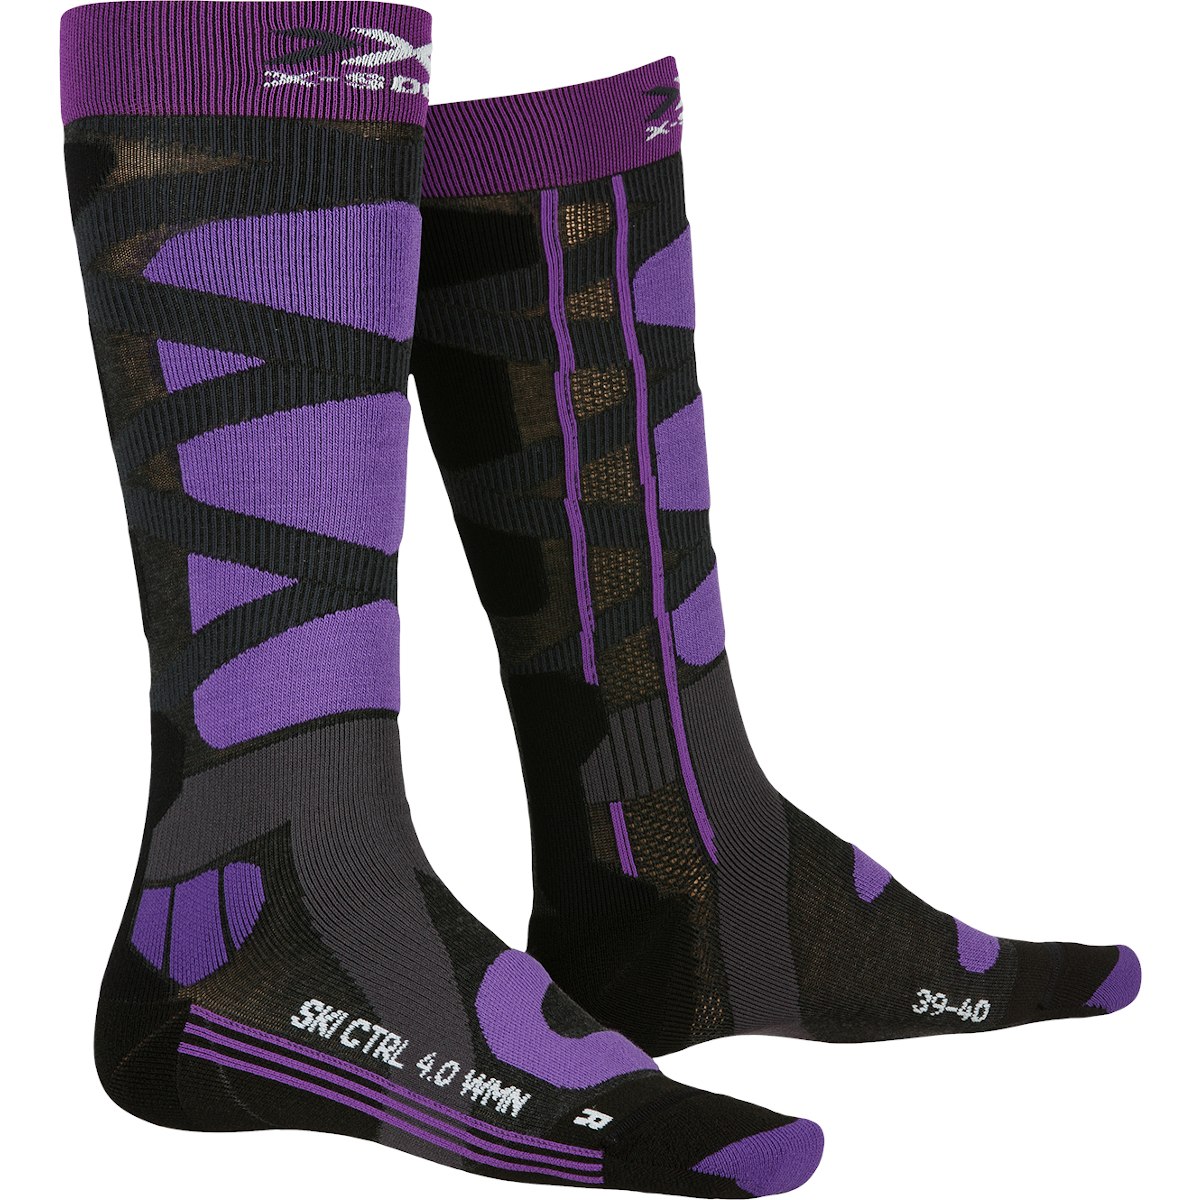 Produktbild von X-Socks Ski Control 4.0 Socken für Damen - charcoal melange/purple